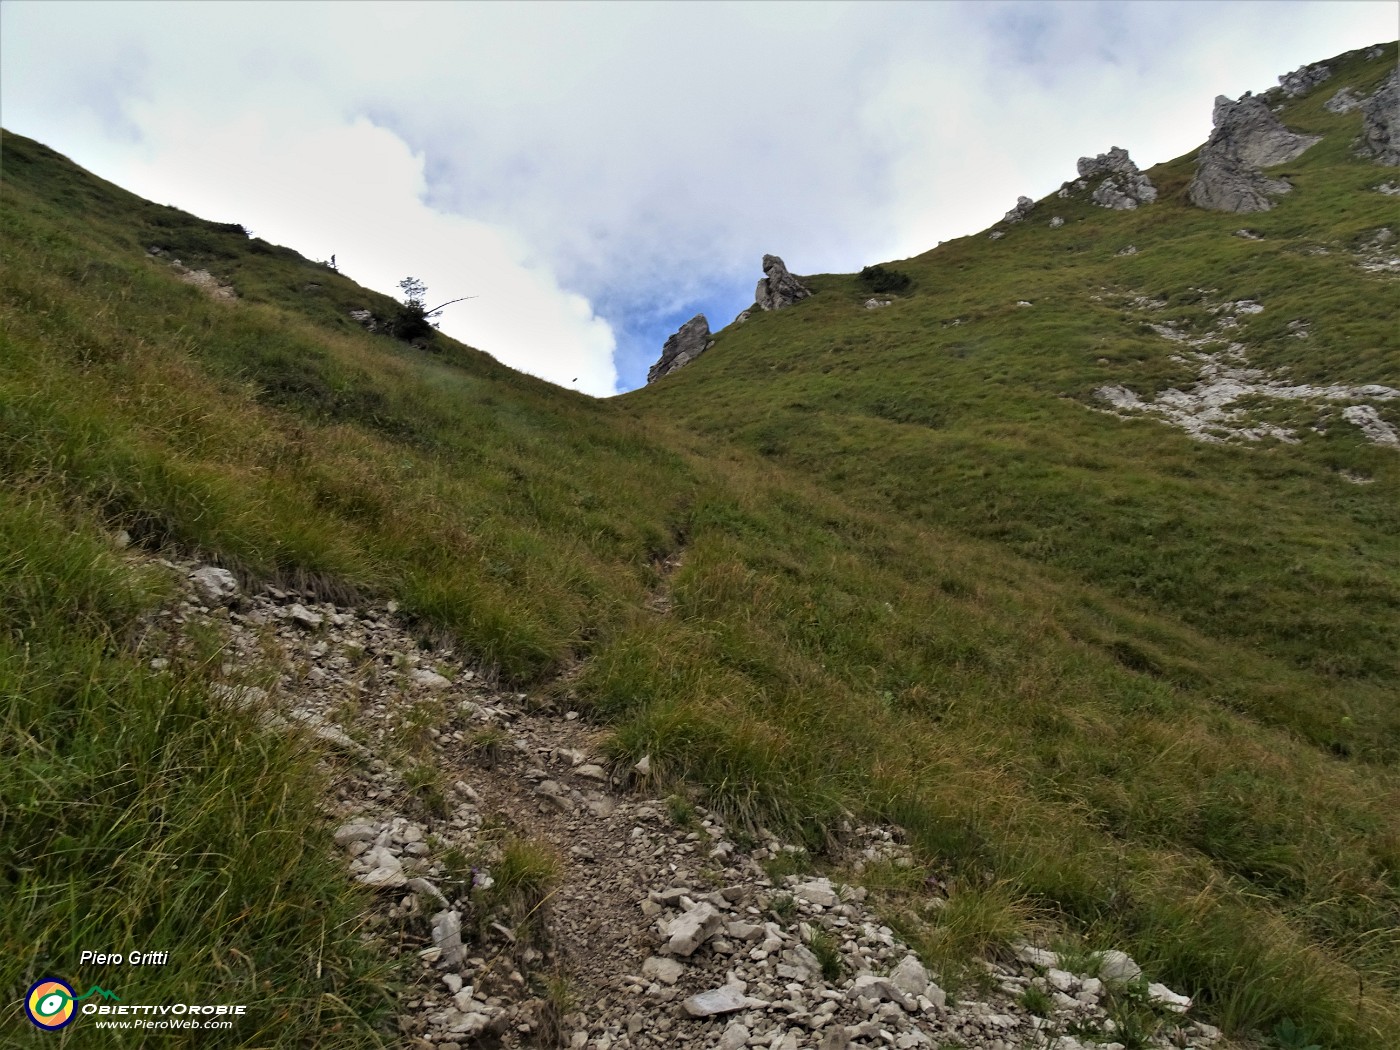 42 E finalmente dopo lunga faticosa salita in vista il Passo di Campelli (1850 m).JPG